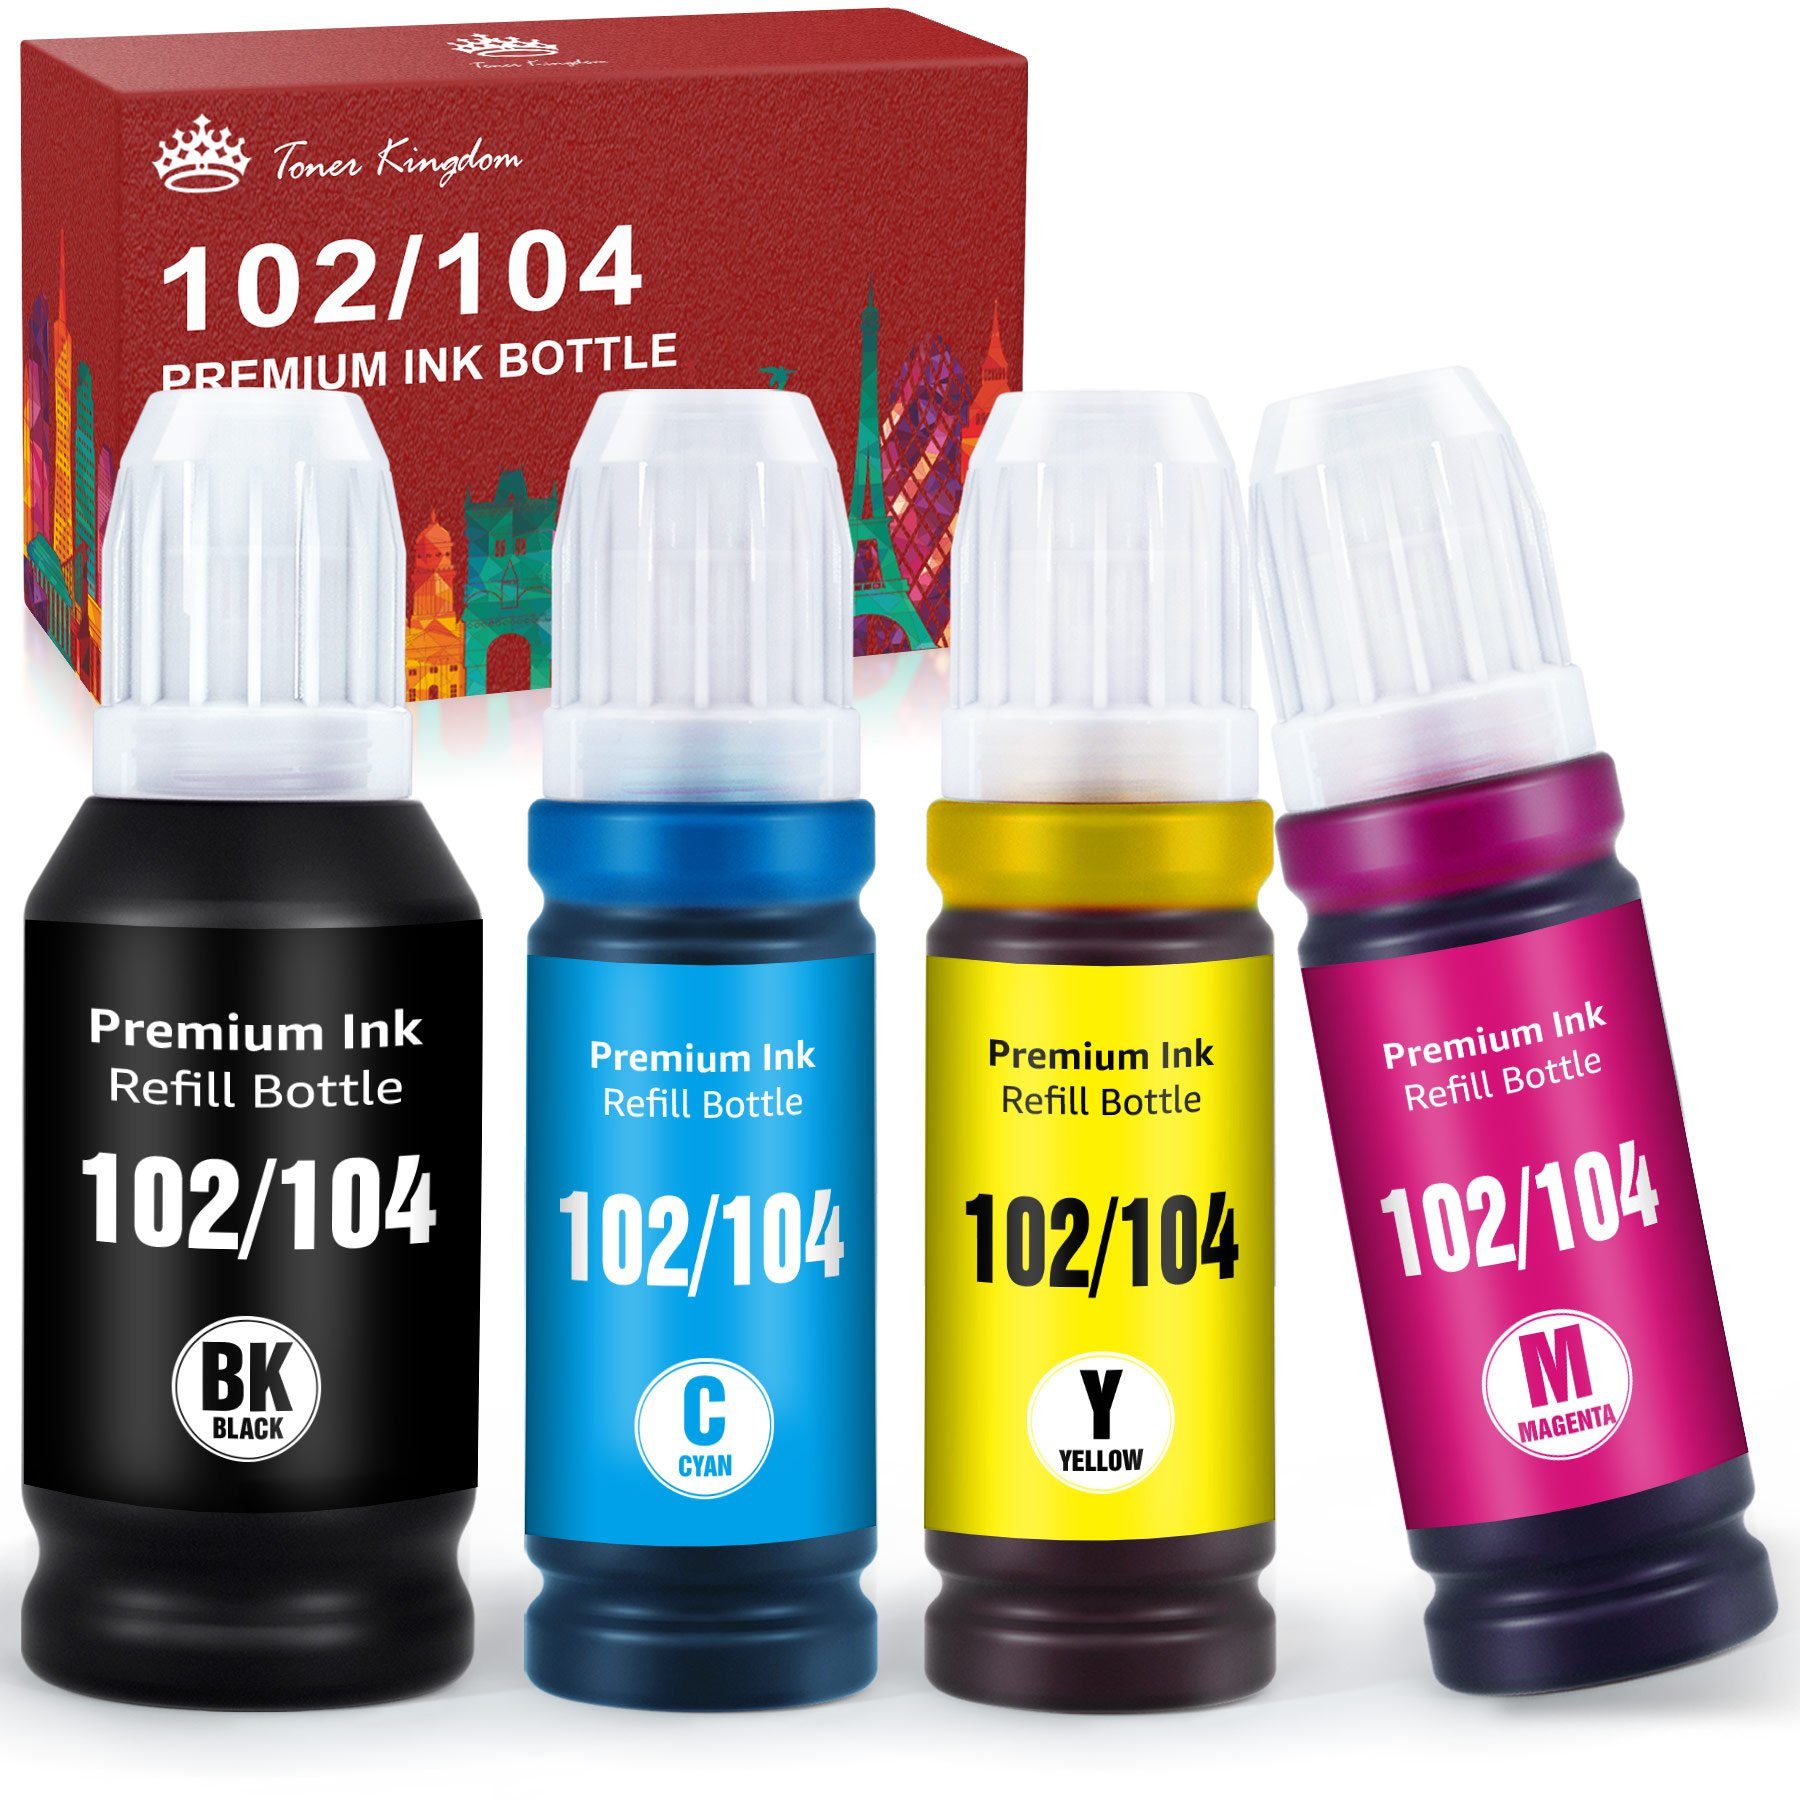 Toner Kingdom »102 104 Tintenpatronen« Nachfülltinte (für Epson,  (Schwarz/Cyan/Magenta/Gelb), x, Kompatibel für Epson 102 oder Epson 104  Tinte) online kaufen | OTTO